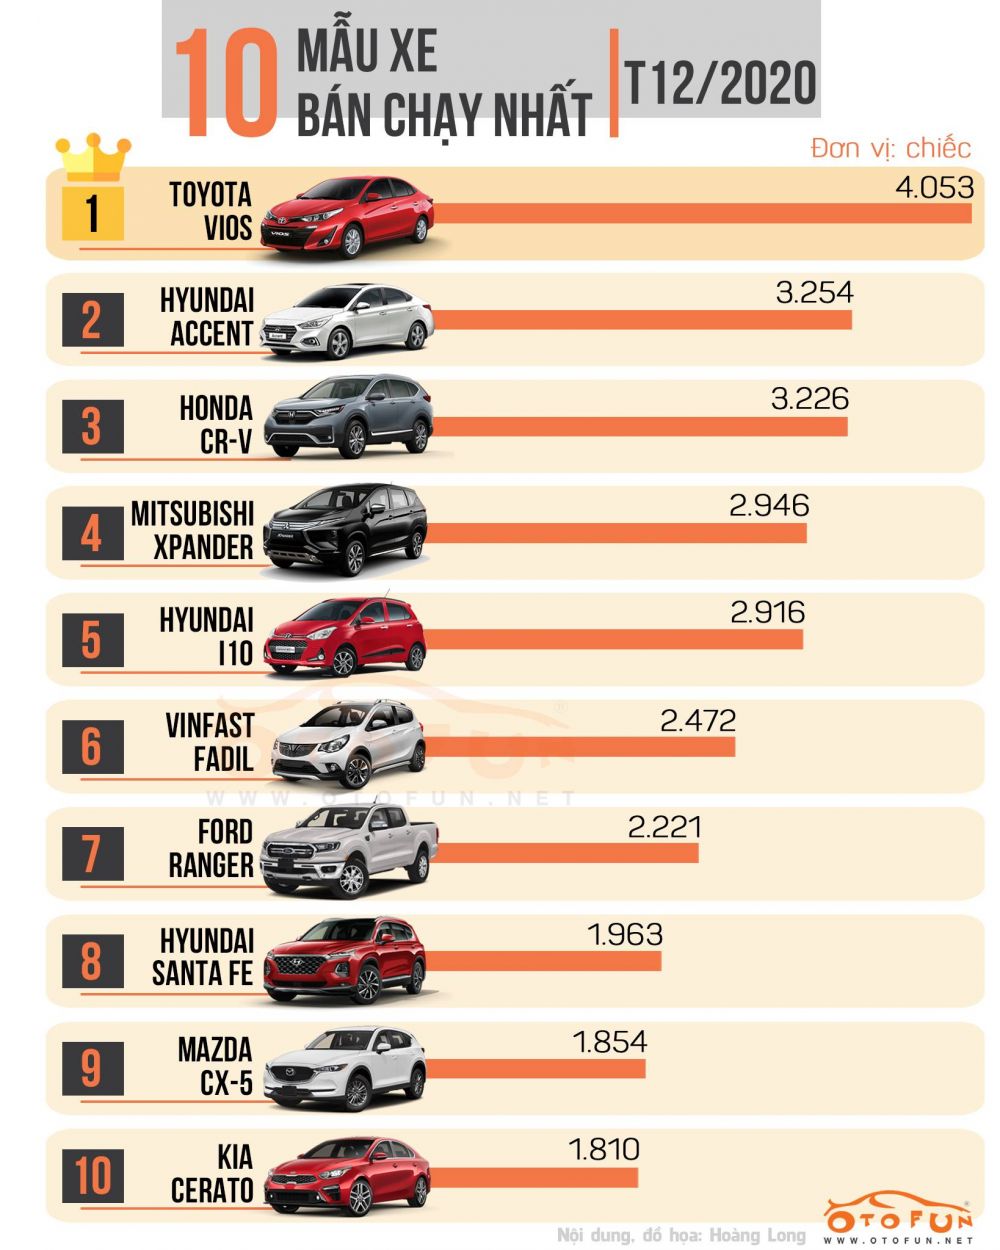 Top 10 xe ô tô bán chạy nhất tháng 12/2020